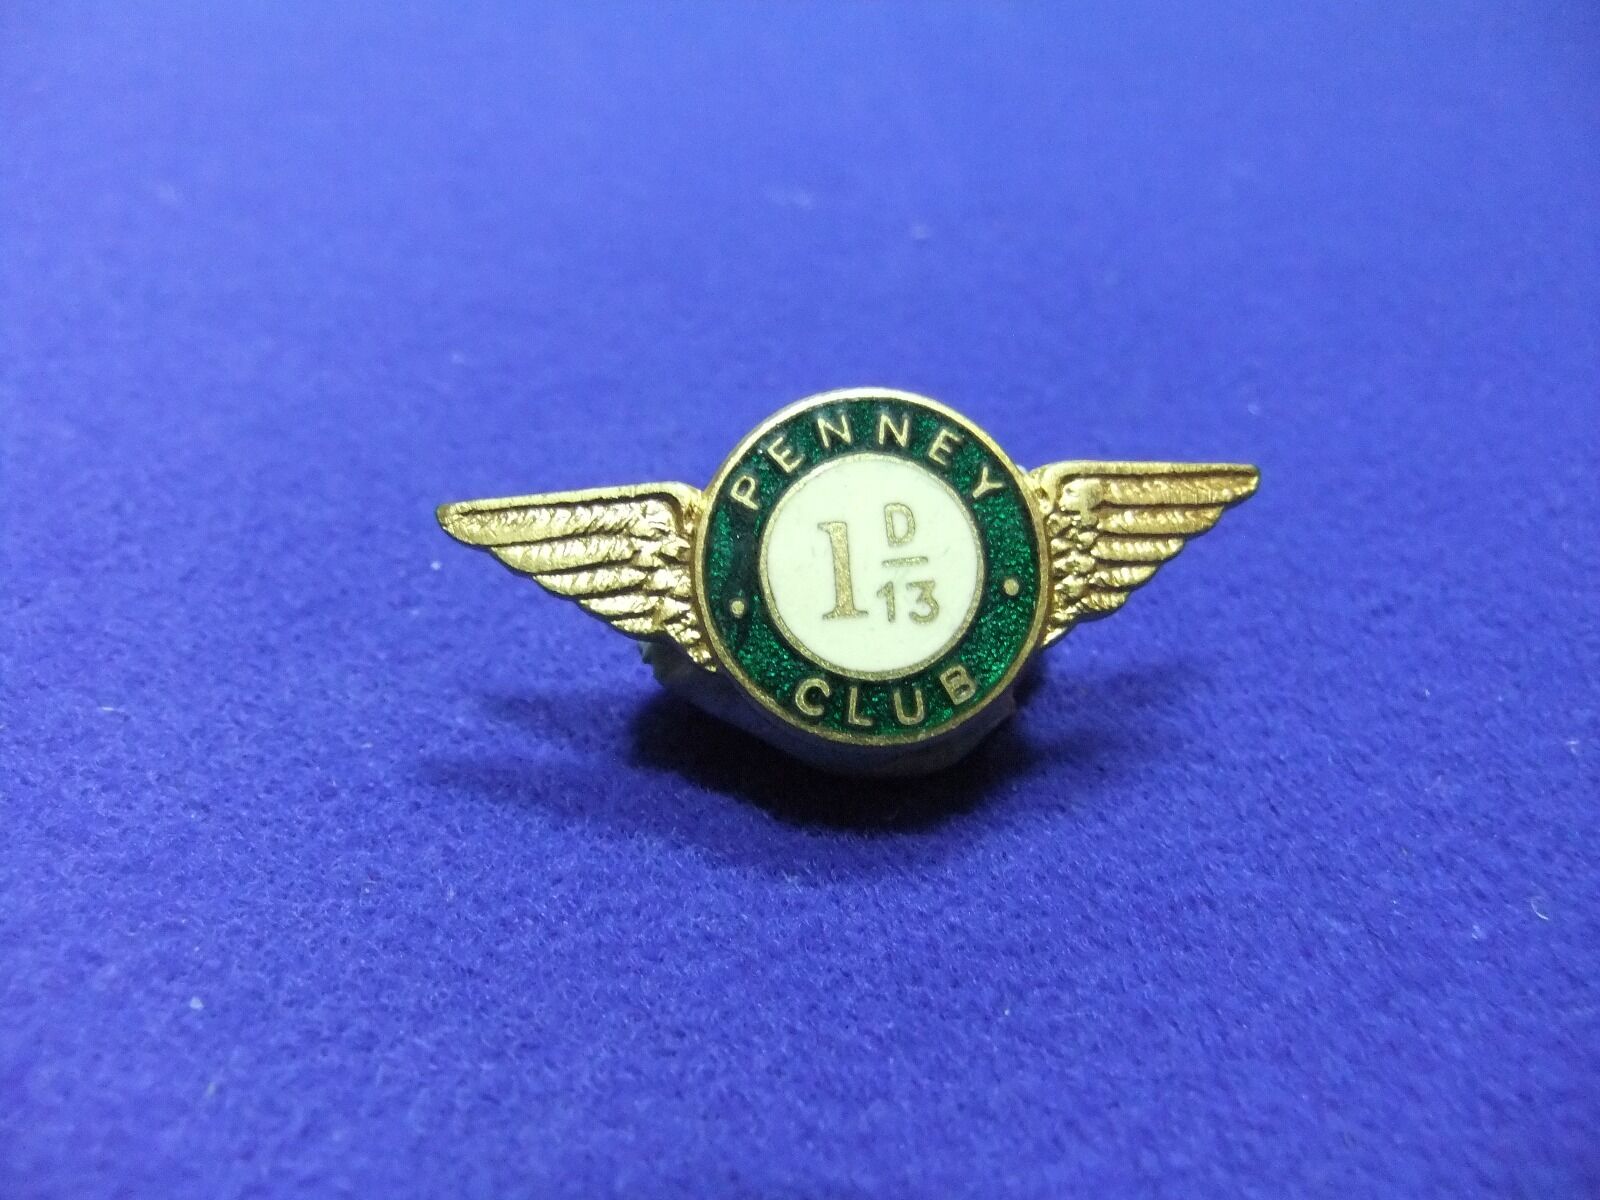 badge aviation aero motor car cycle penney club 1 d-13 member membership 1920s ?